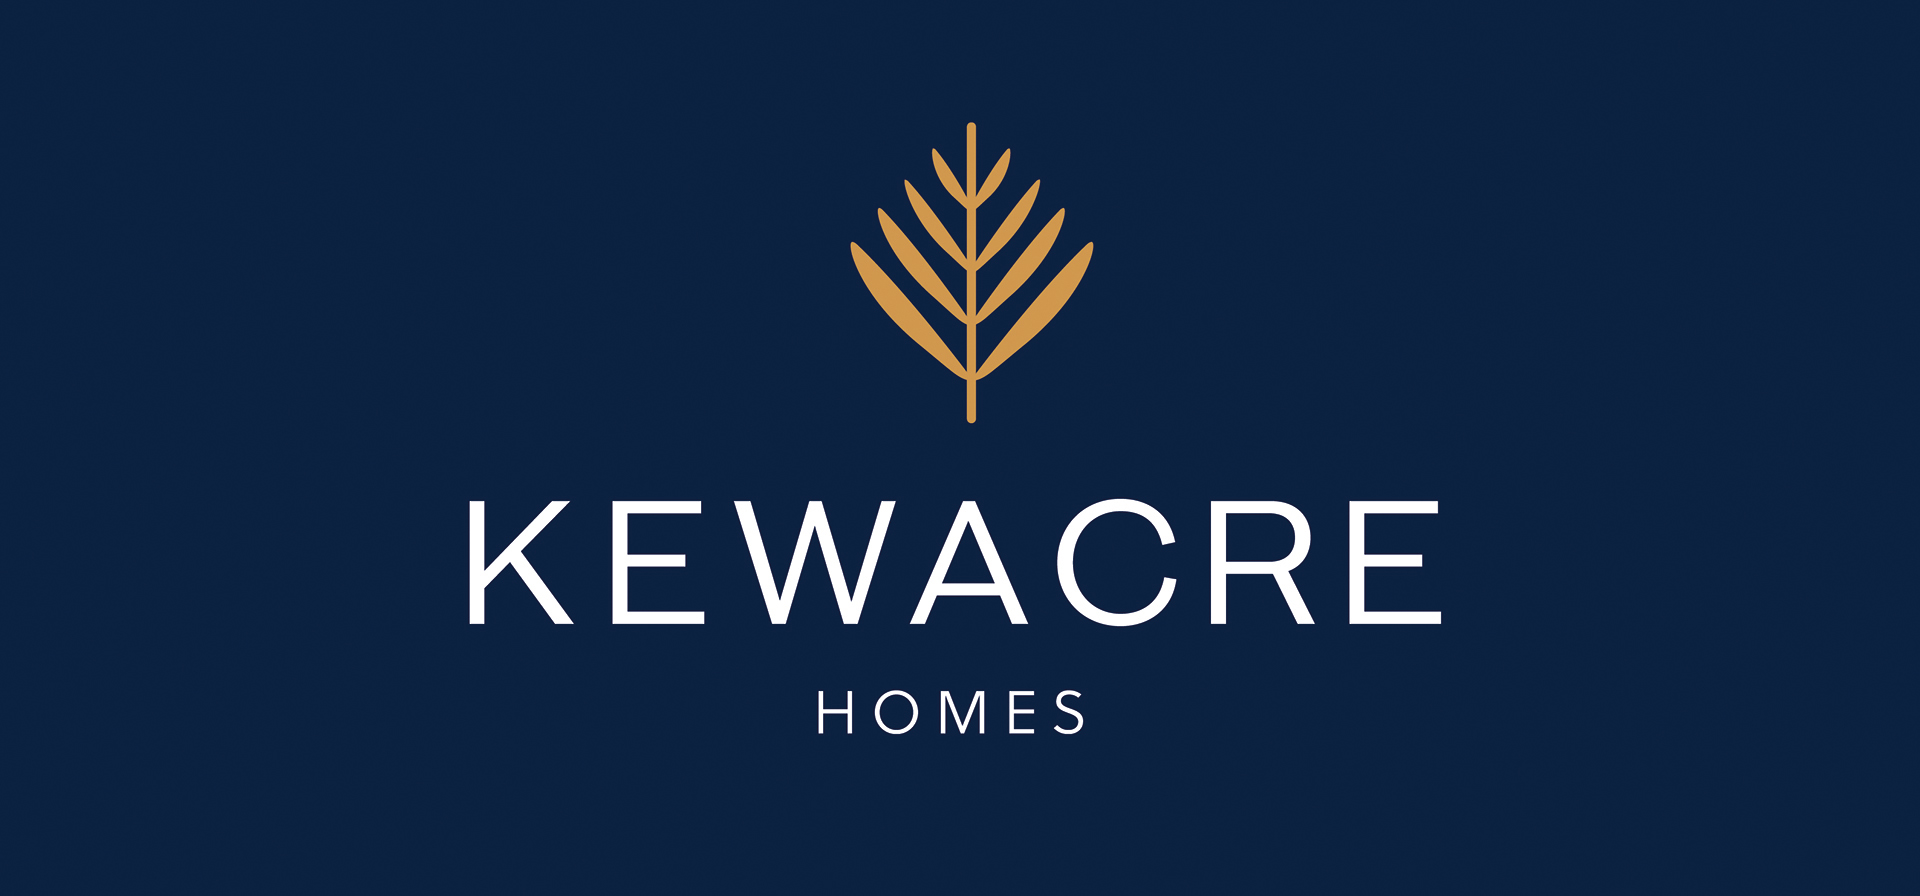 Kewacre Homes